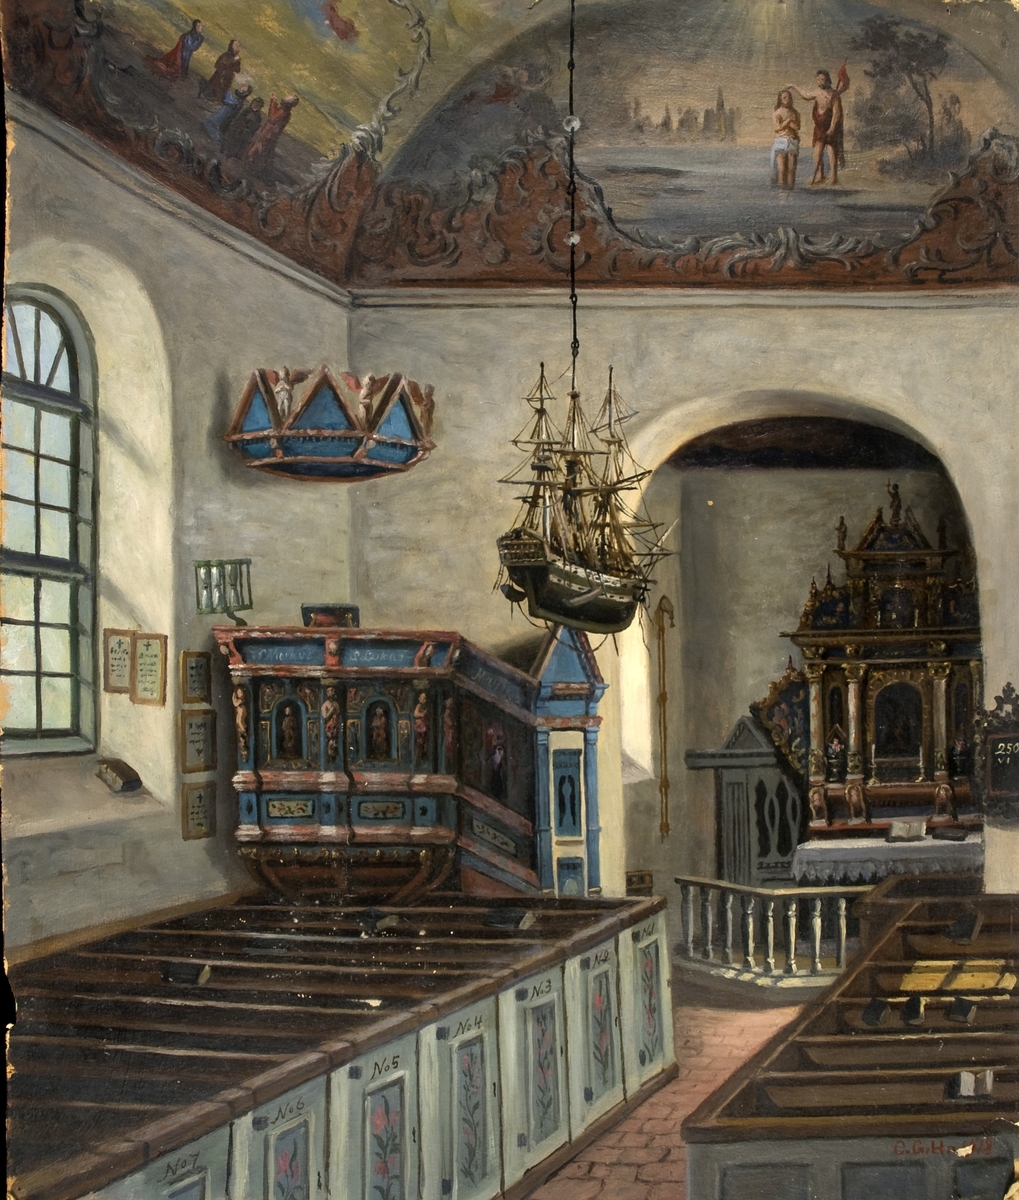 Kyrkointeriör, Alfshögs gamla kyrka med altare.